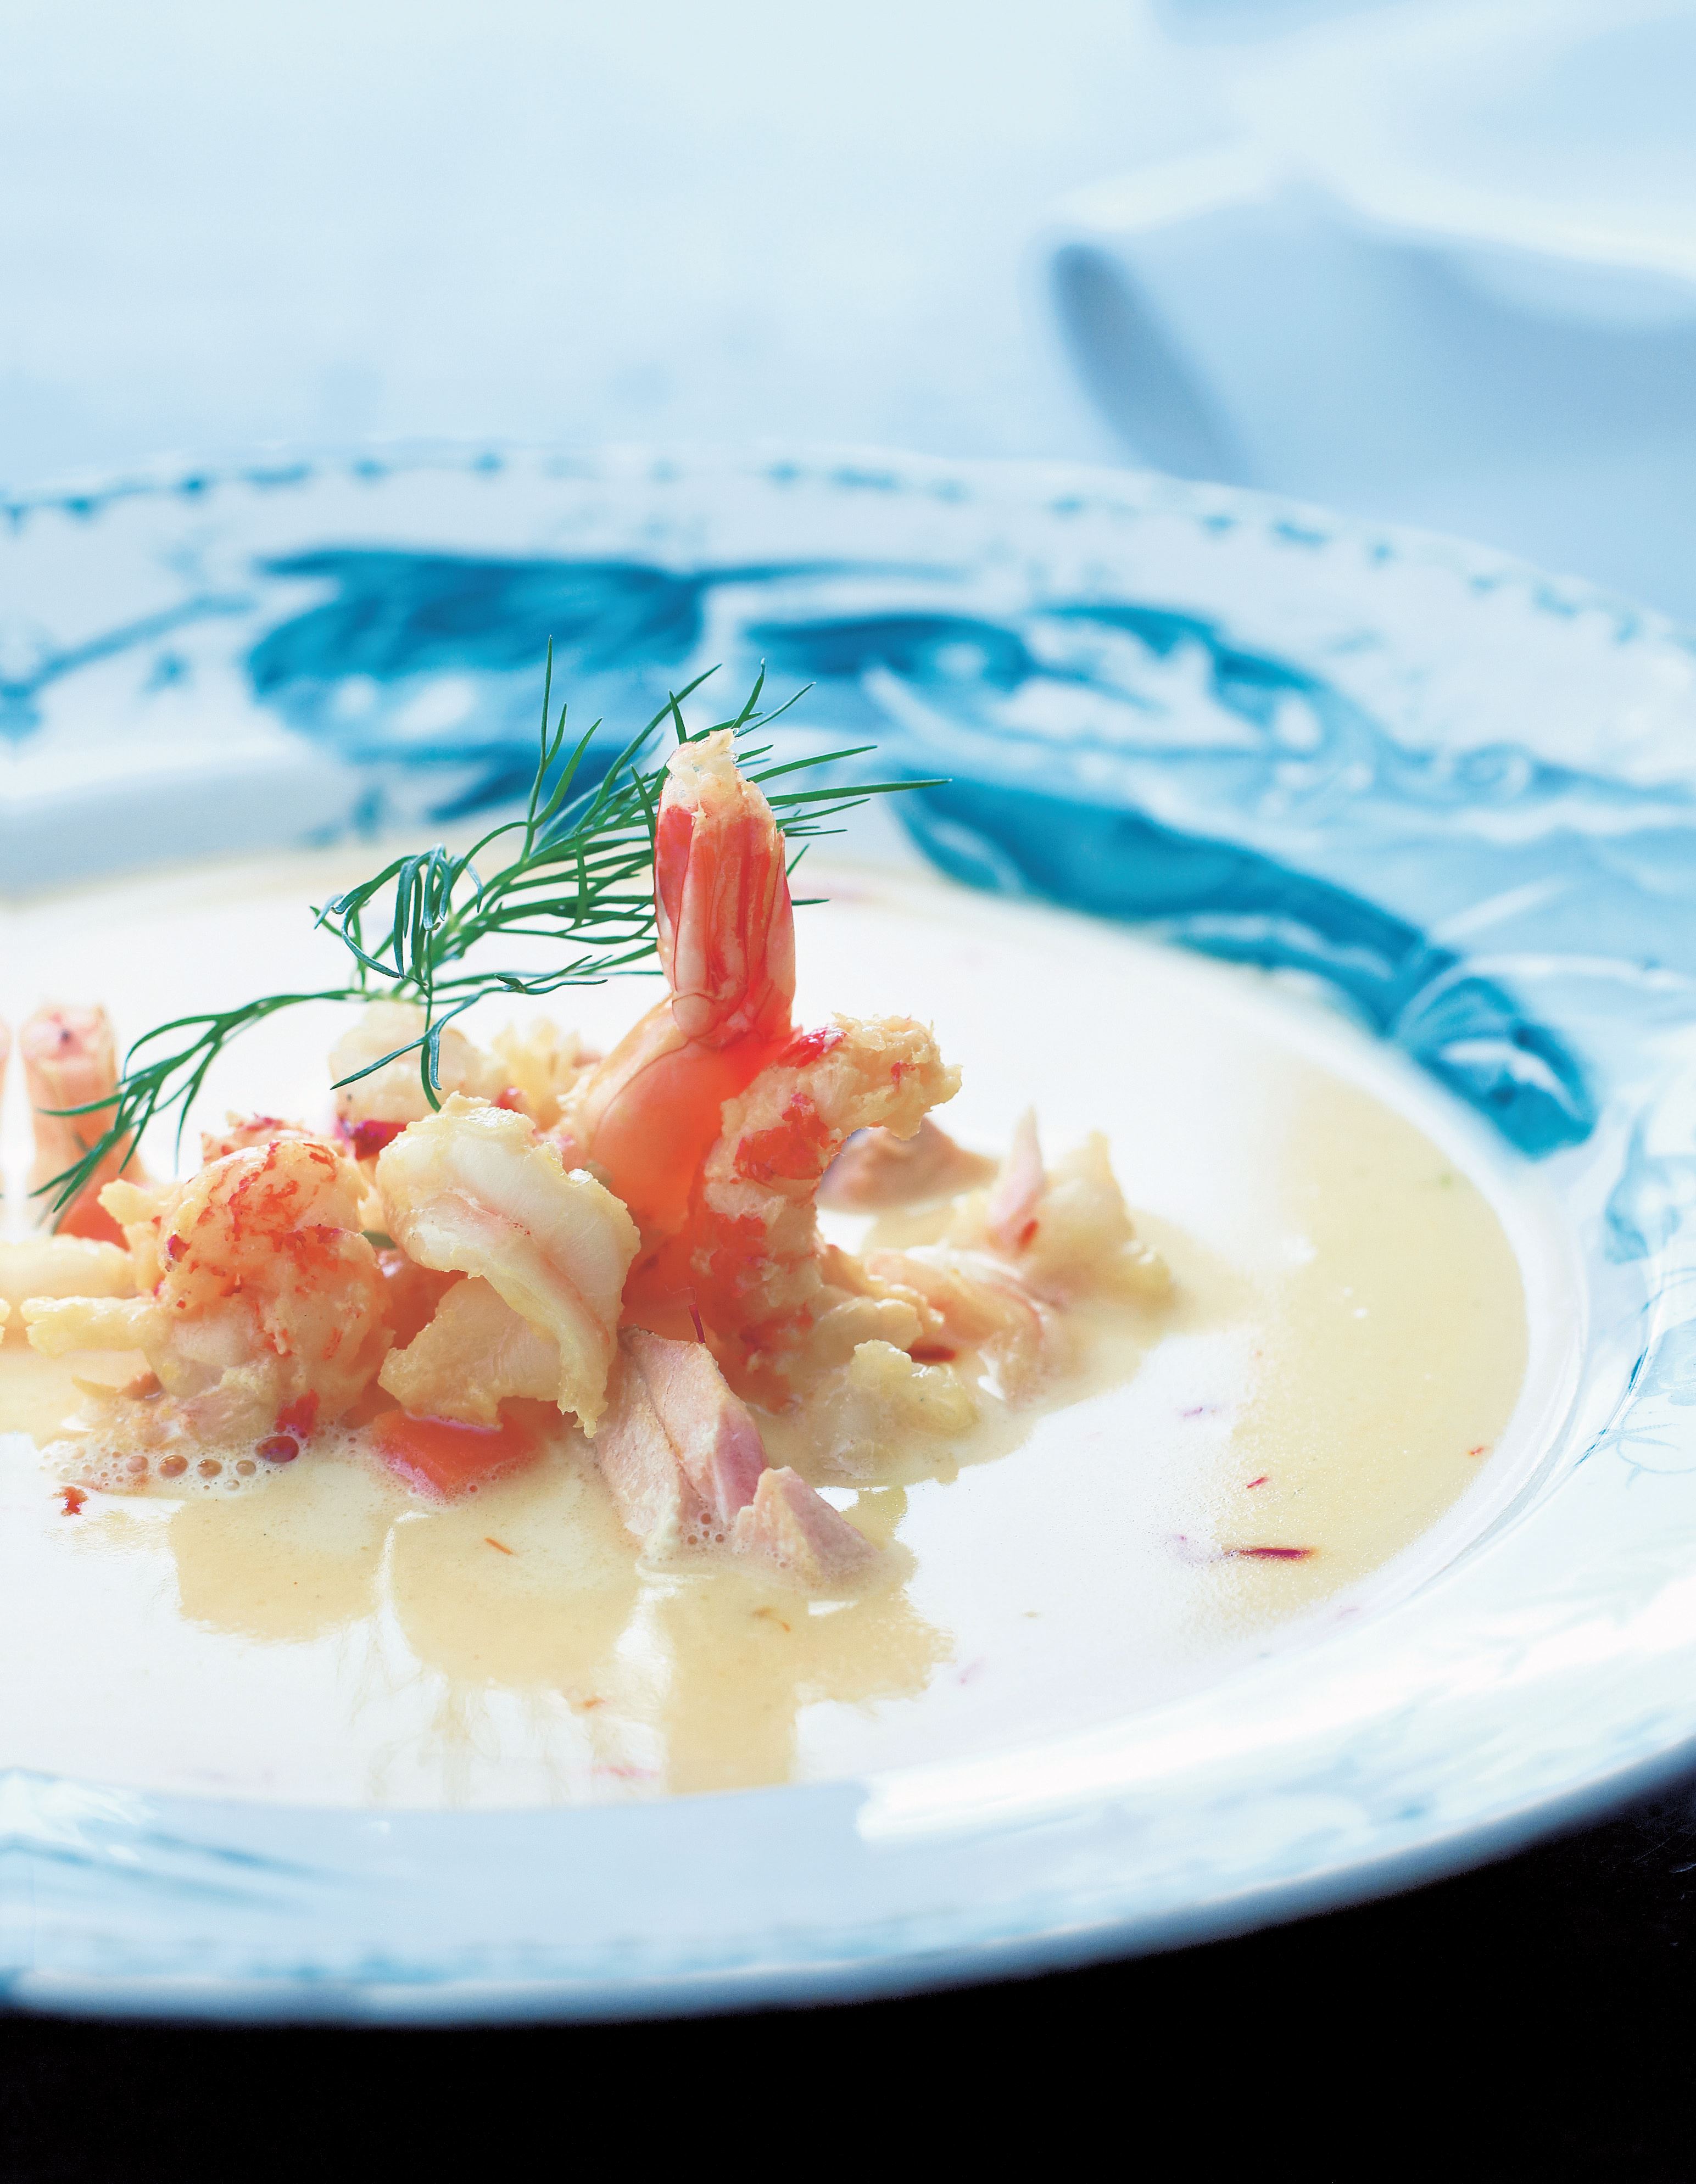 Skagen fish soup